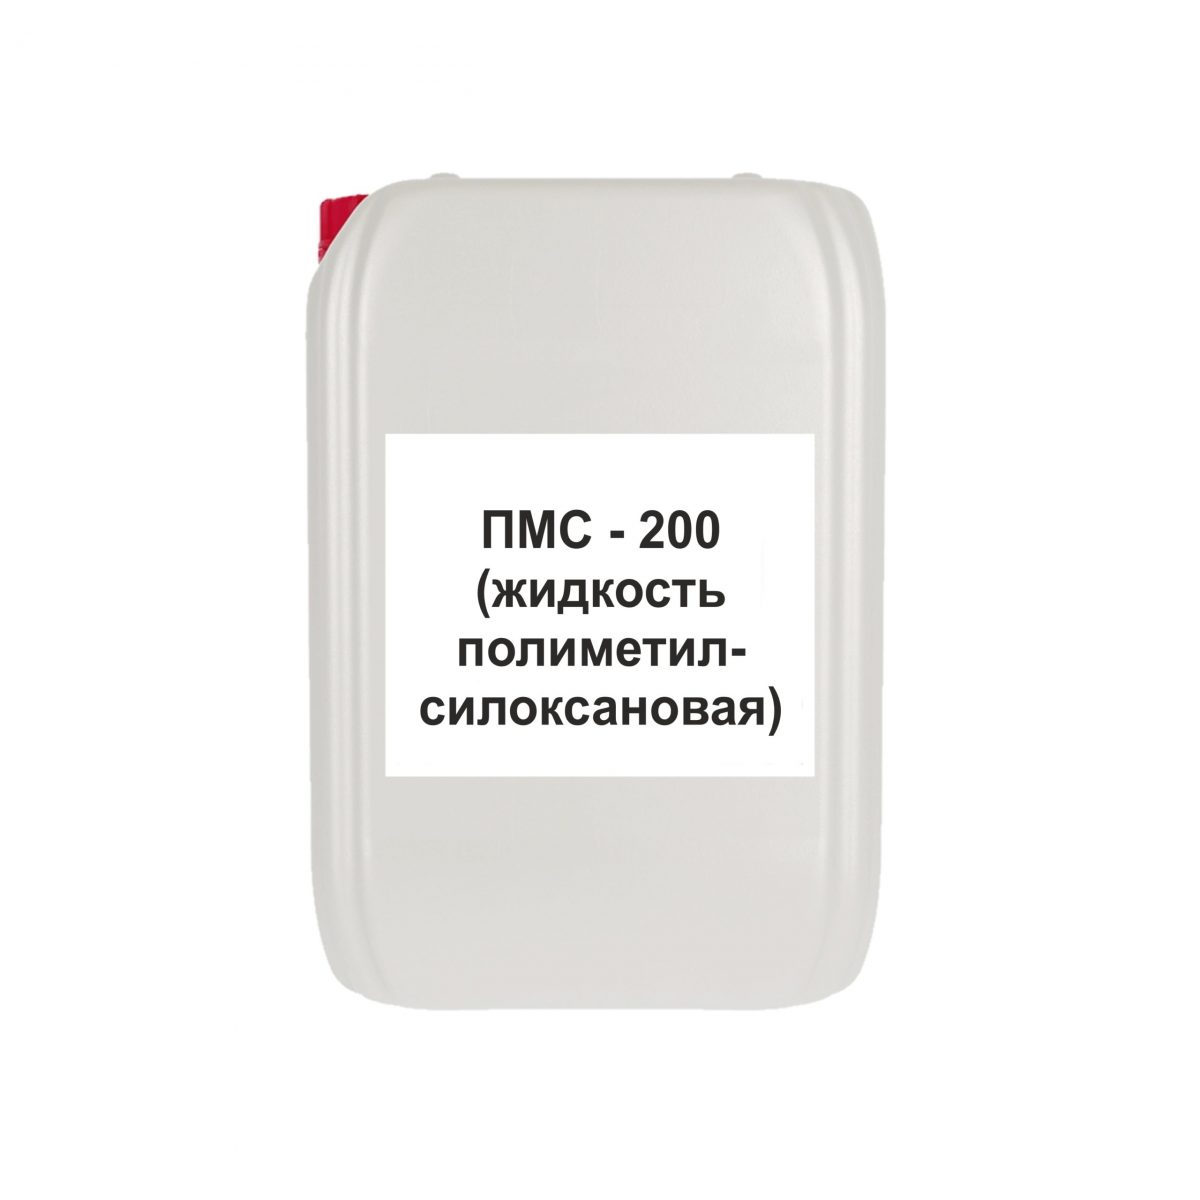 ПМС-200 (жидкость полиметилсилоксановая)